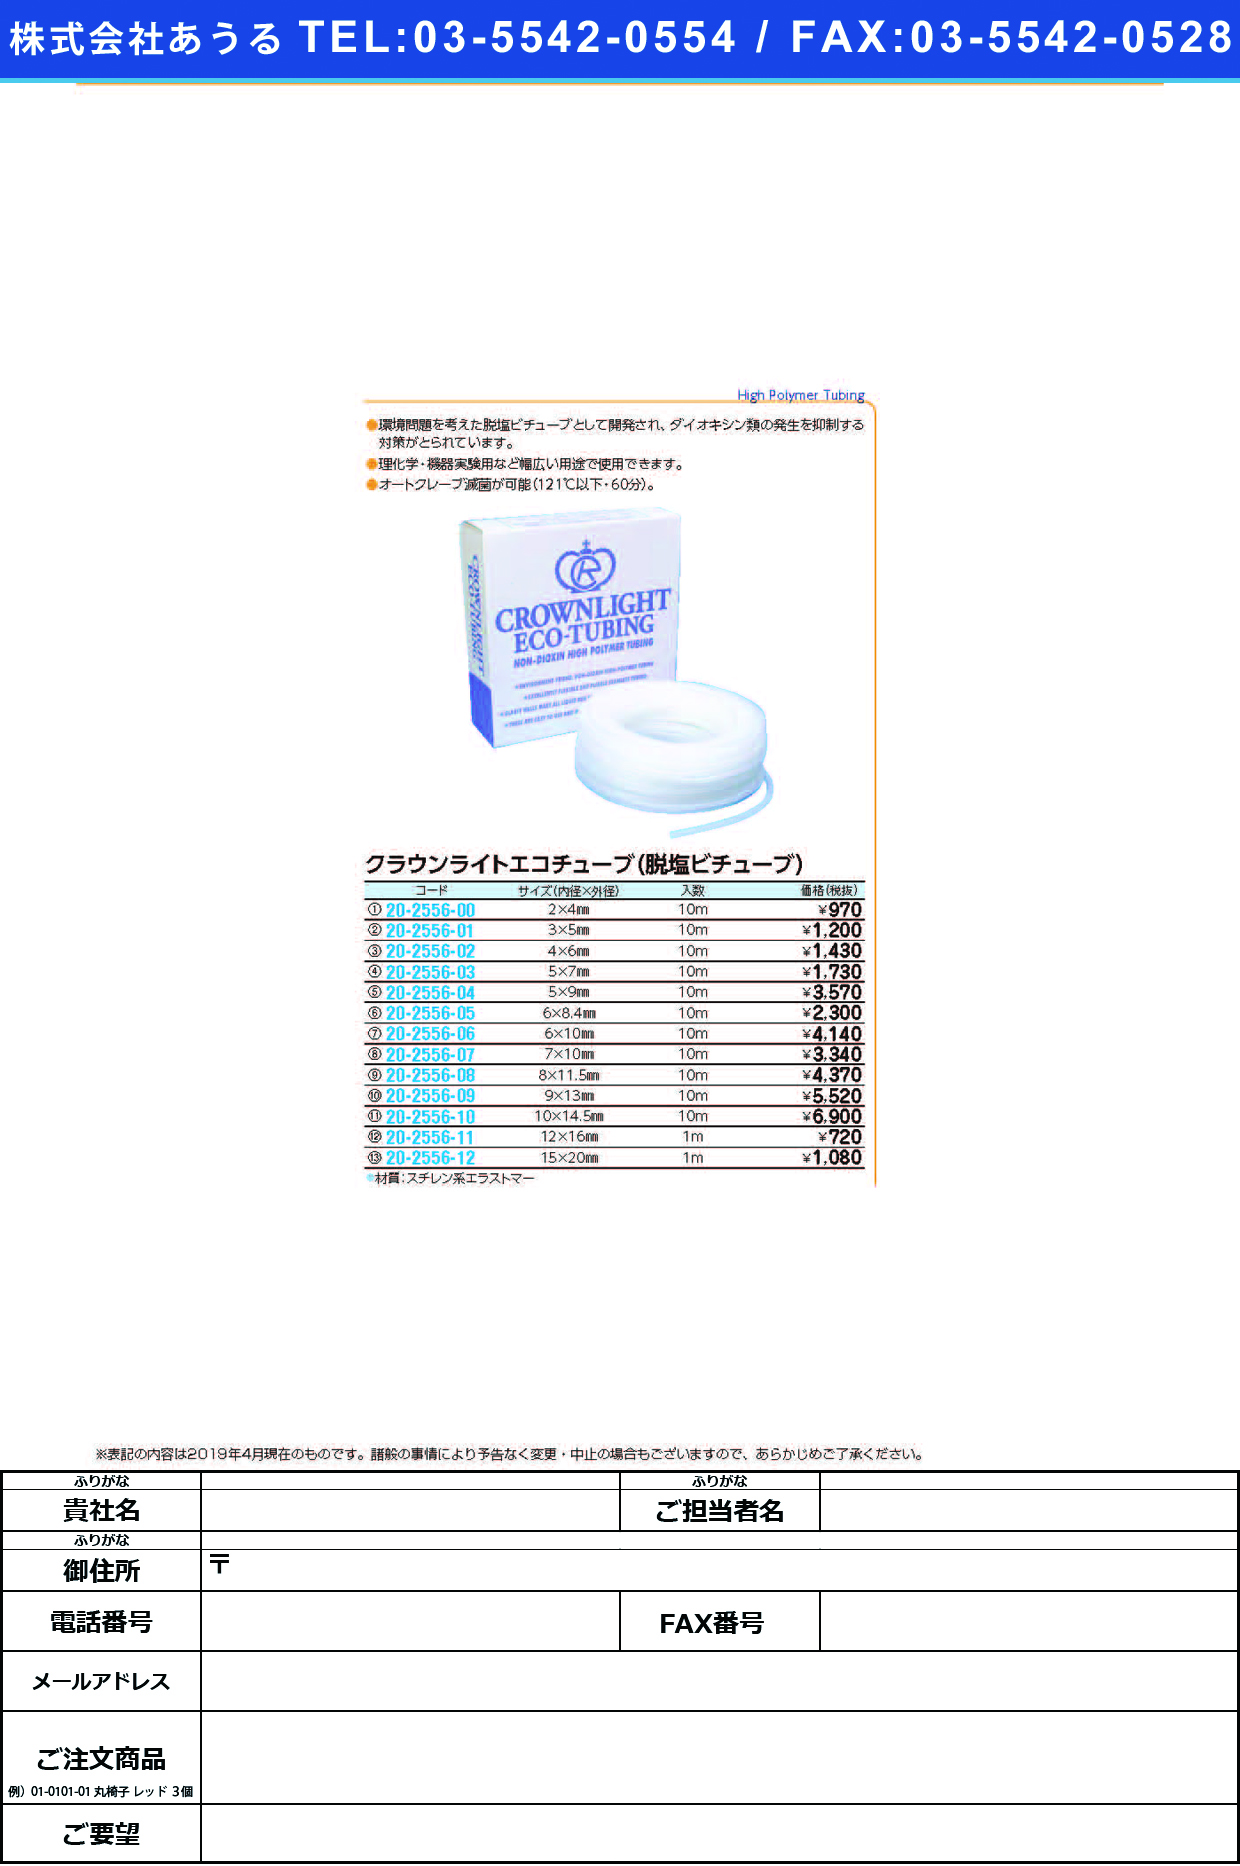 (20-2556-08)クラウンライトエコチューブ 8.0X11.5(10Mｲﾘ) ｸﾗｳﾝﾗｲﾄｴｺﾁｭｰﾌﾞ【1袋単位】【2019年カタログ商品】